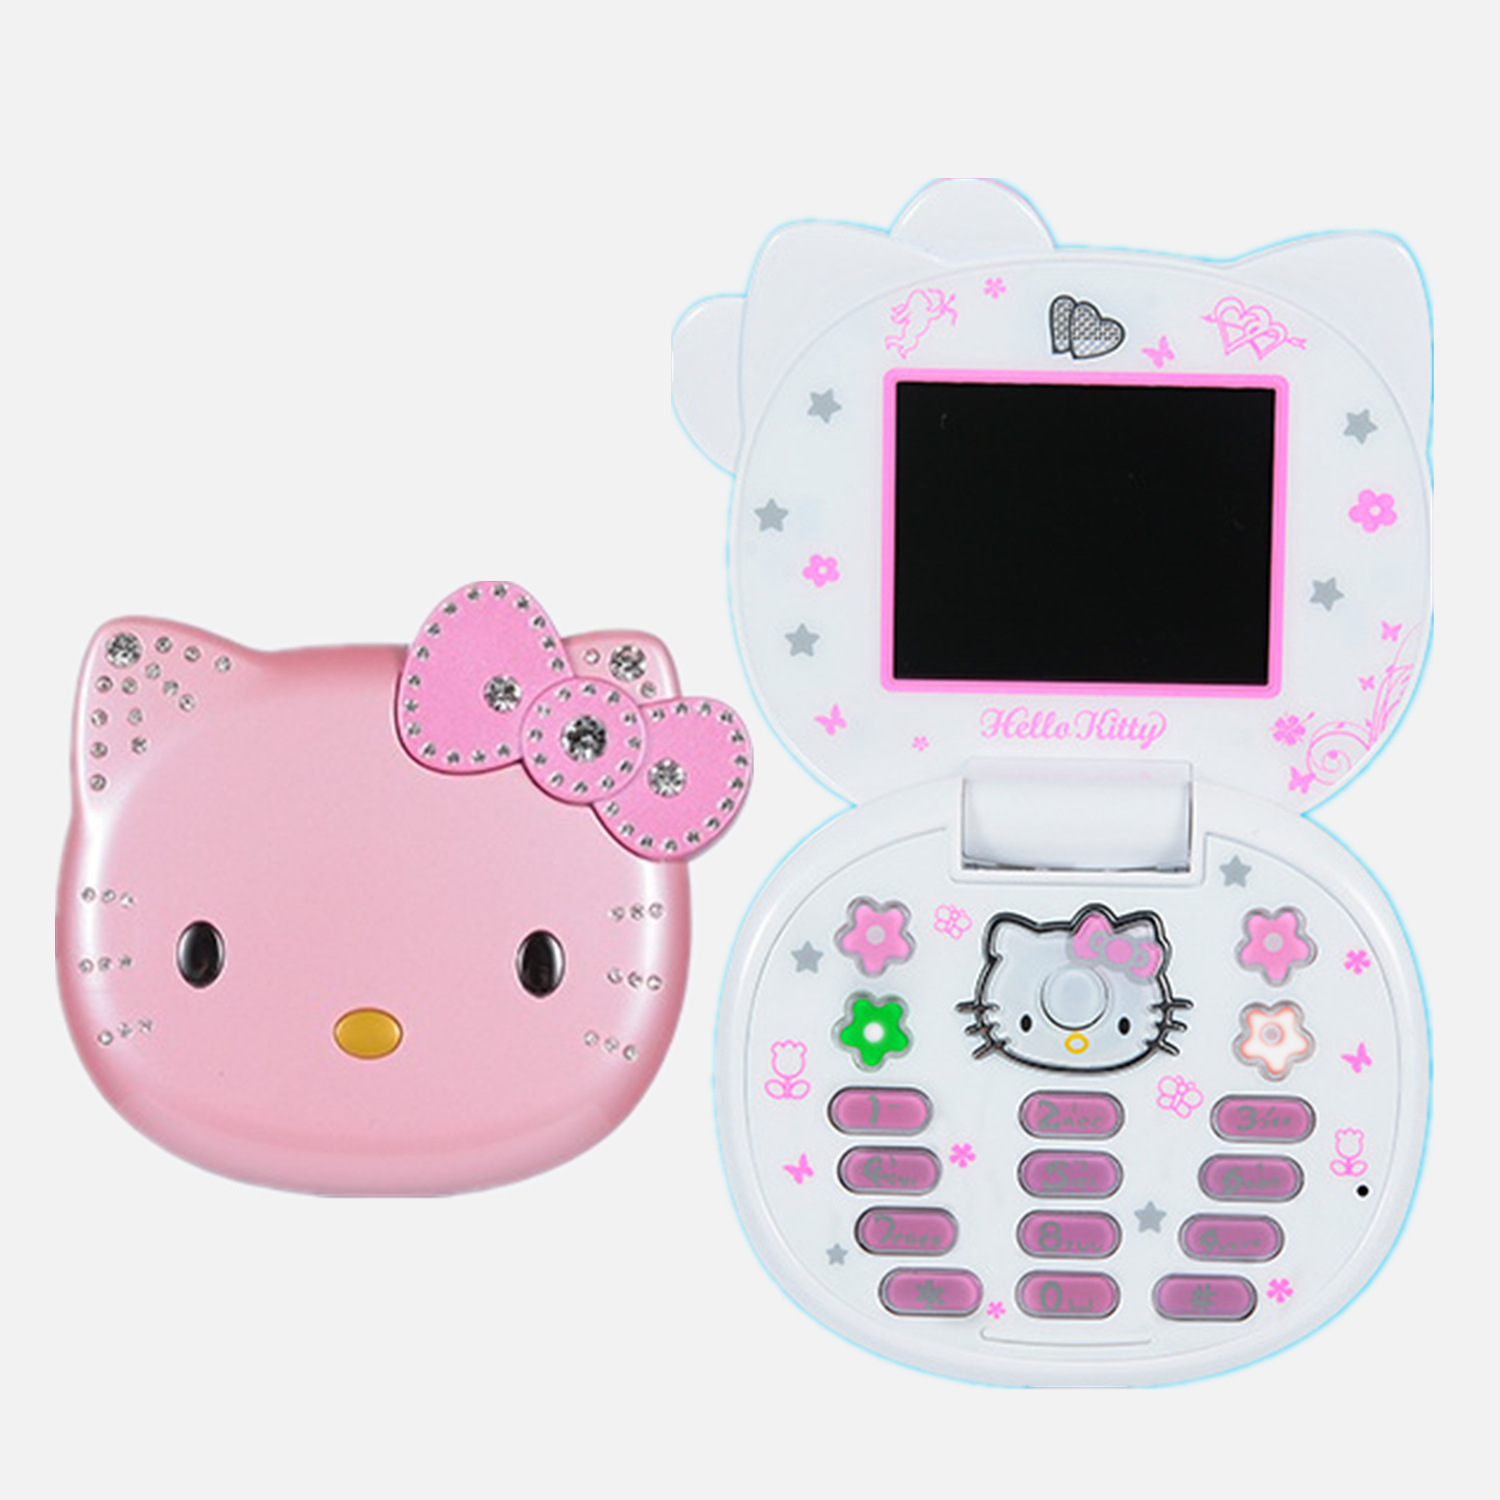 外单热销小手机新款K688凯蒂猫翻盖手机卡通可爱学生儿童迷你手机